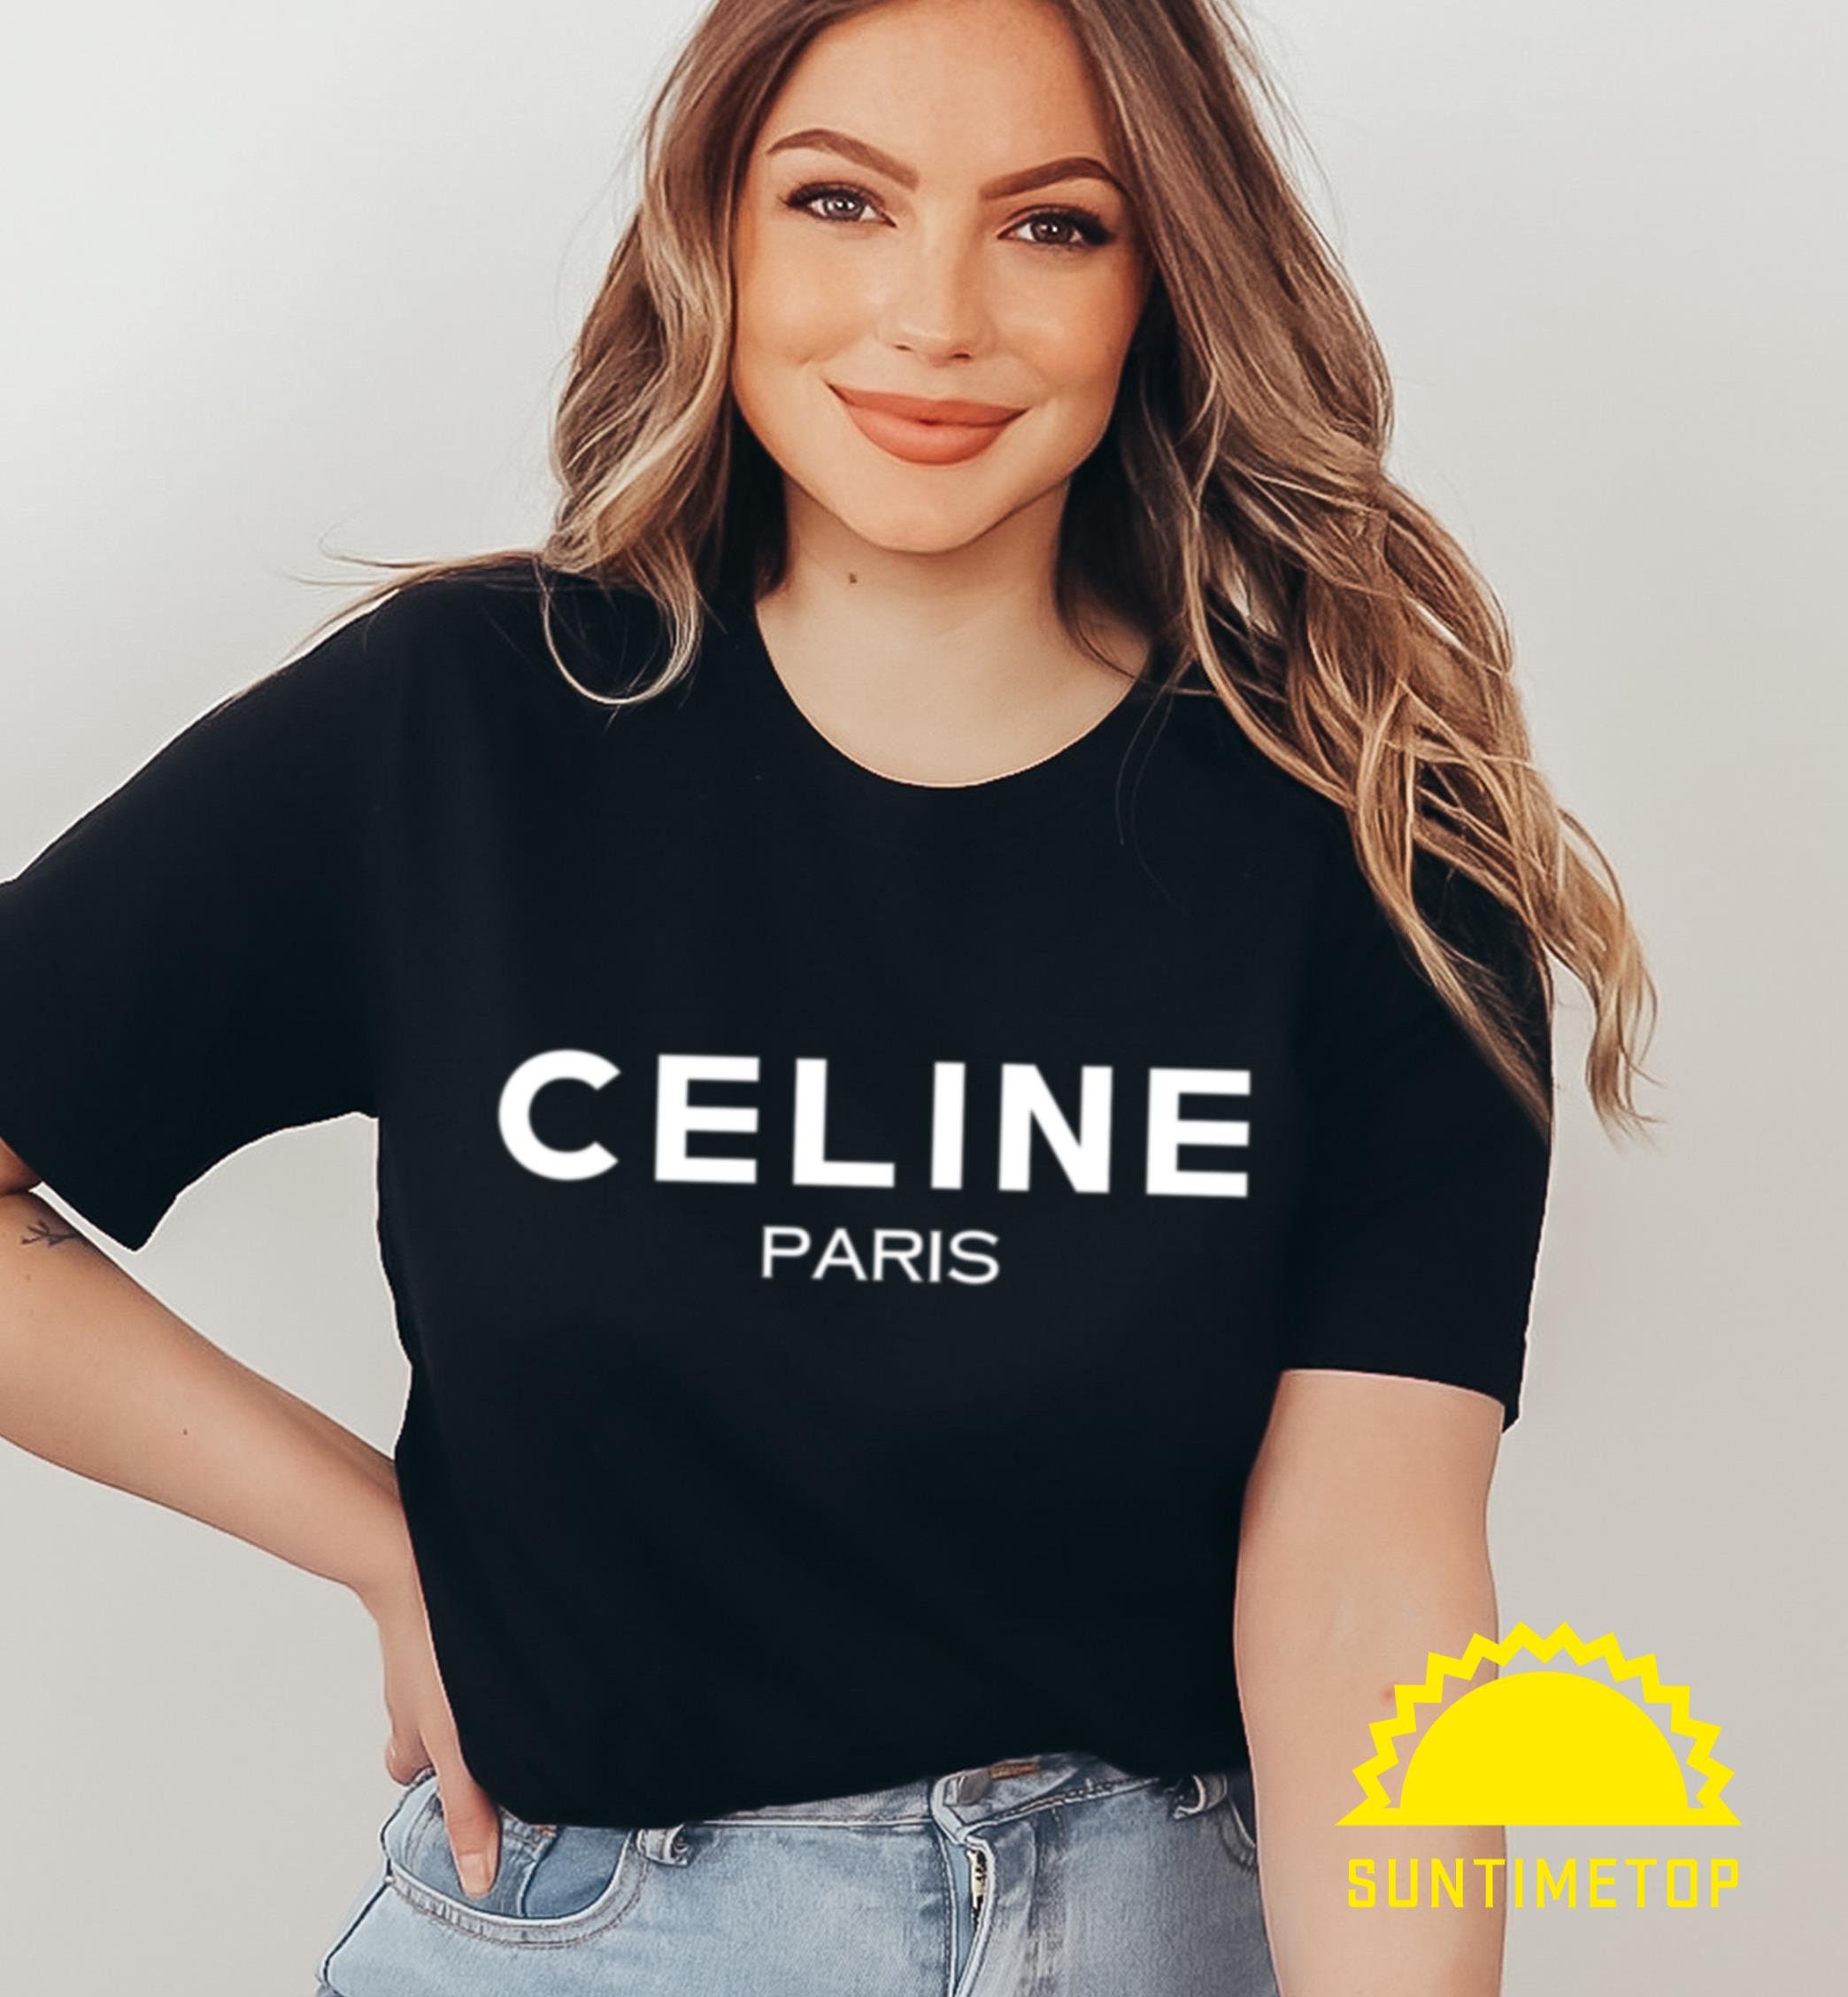 Celine Paris T Shirt - Etsy